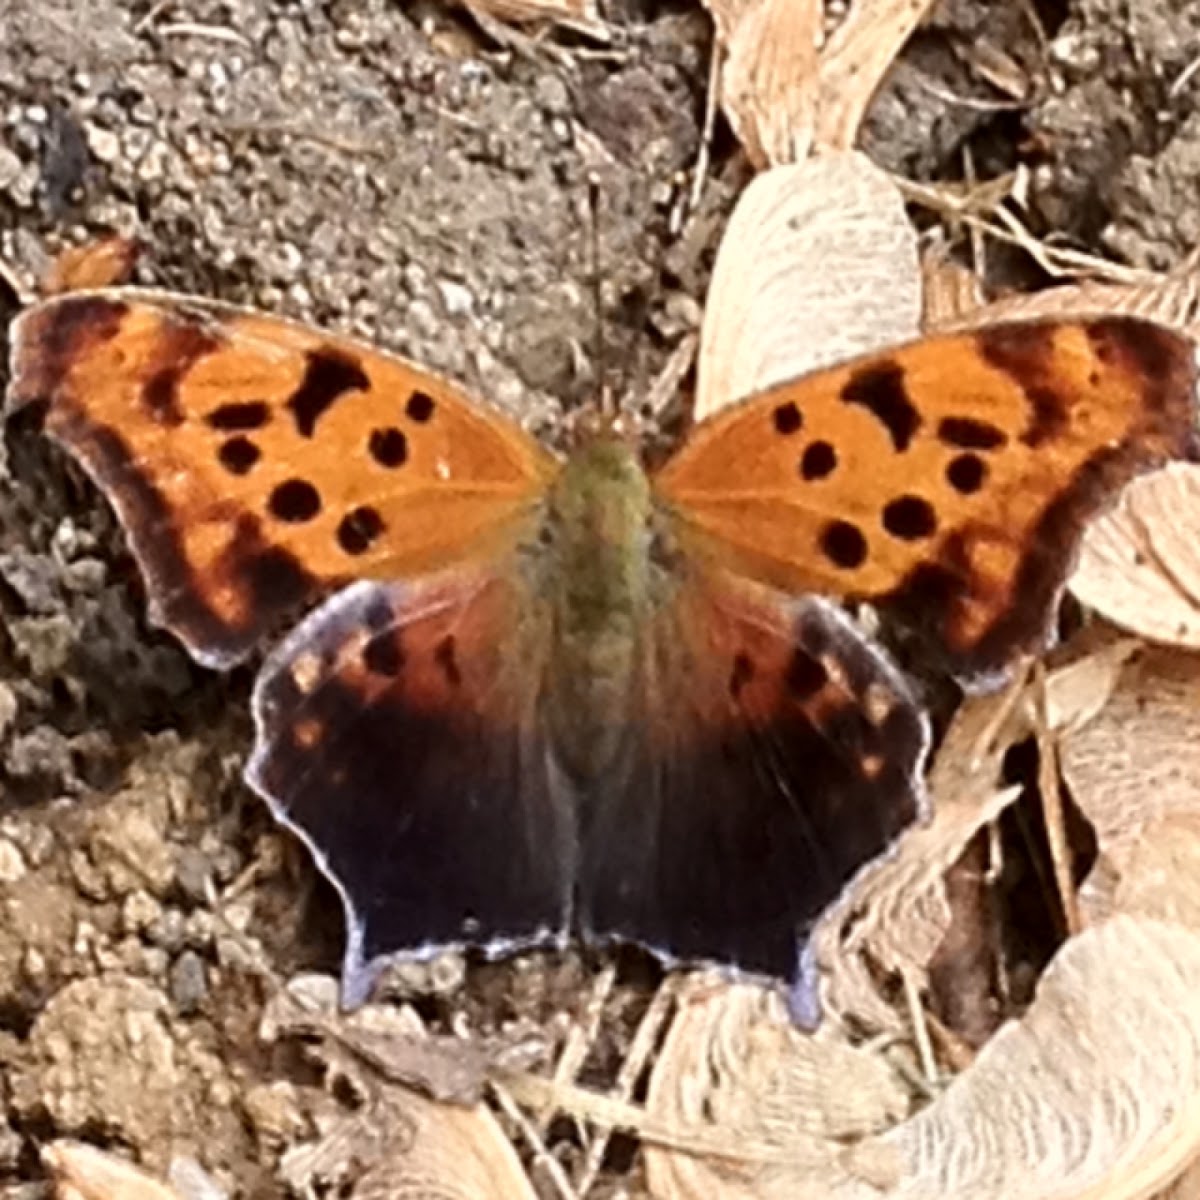 Questionmark butterfly